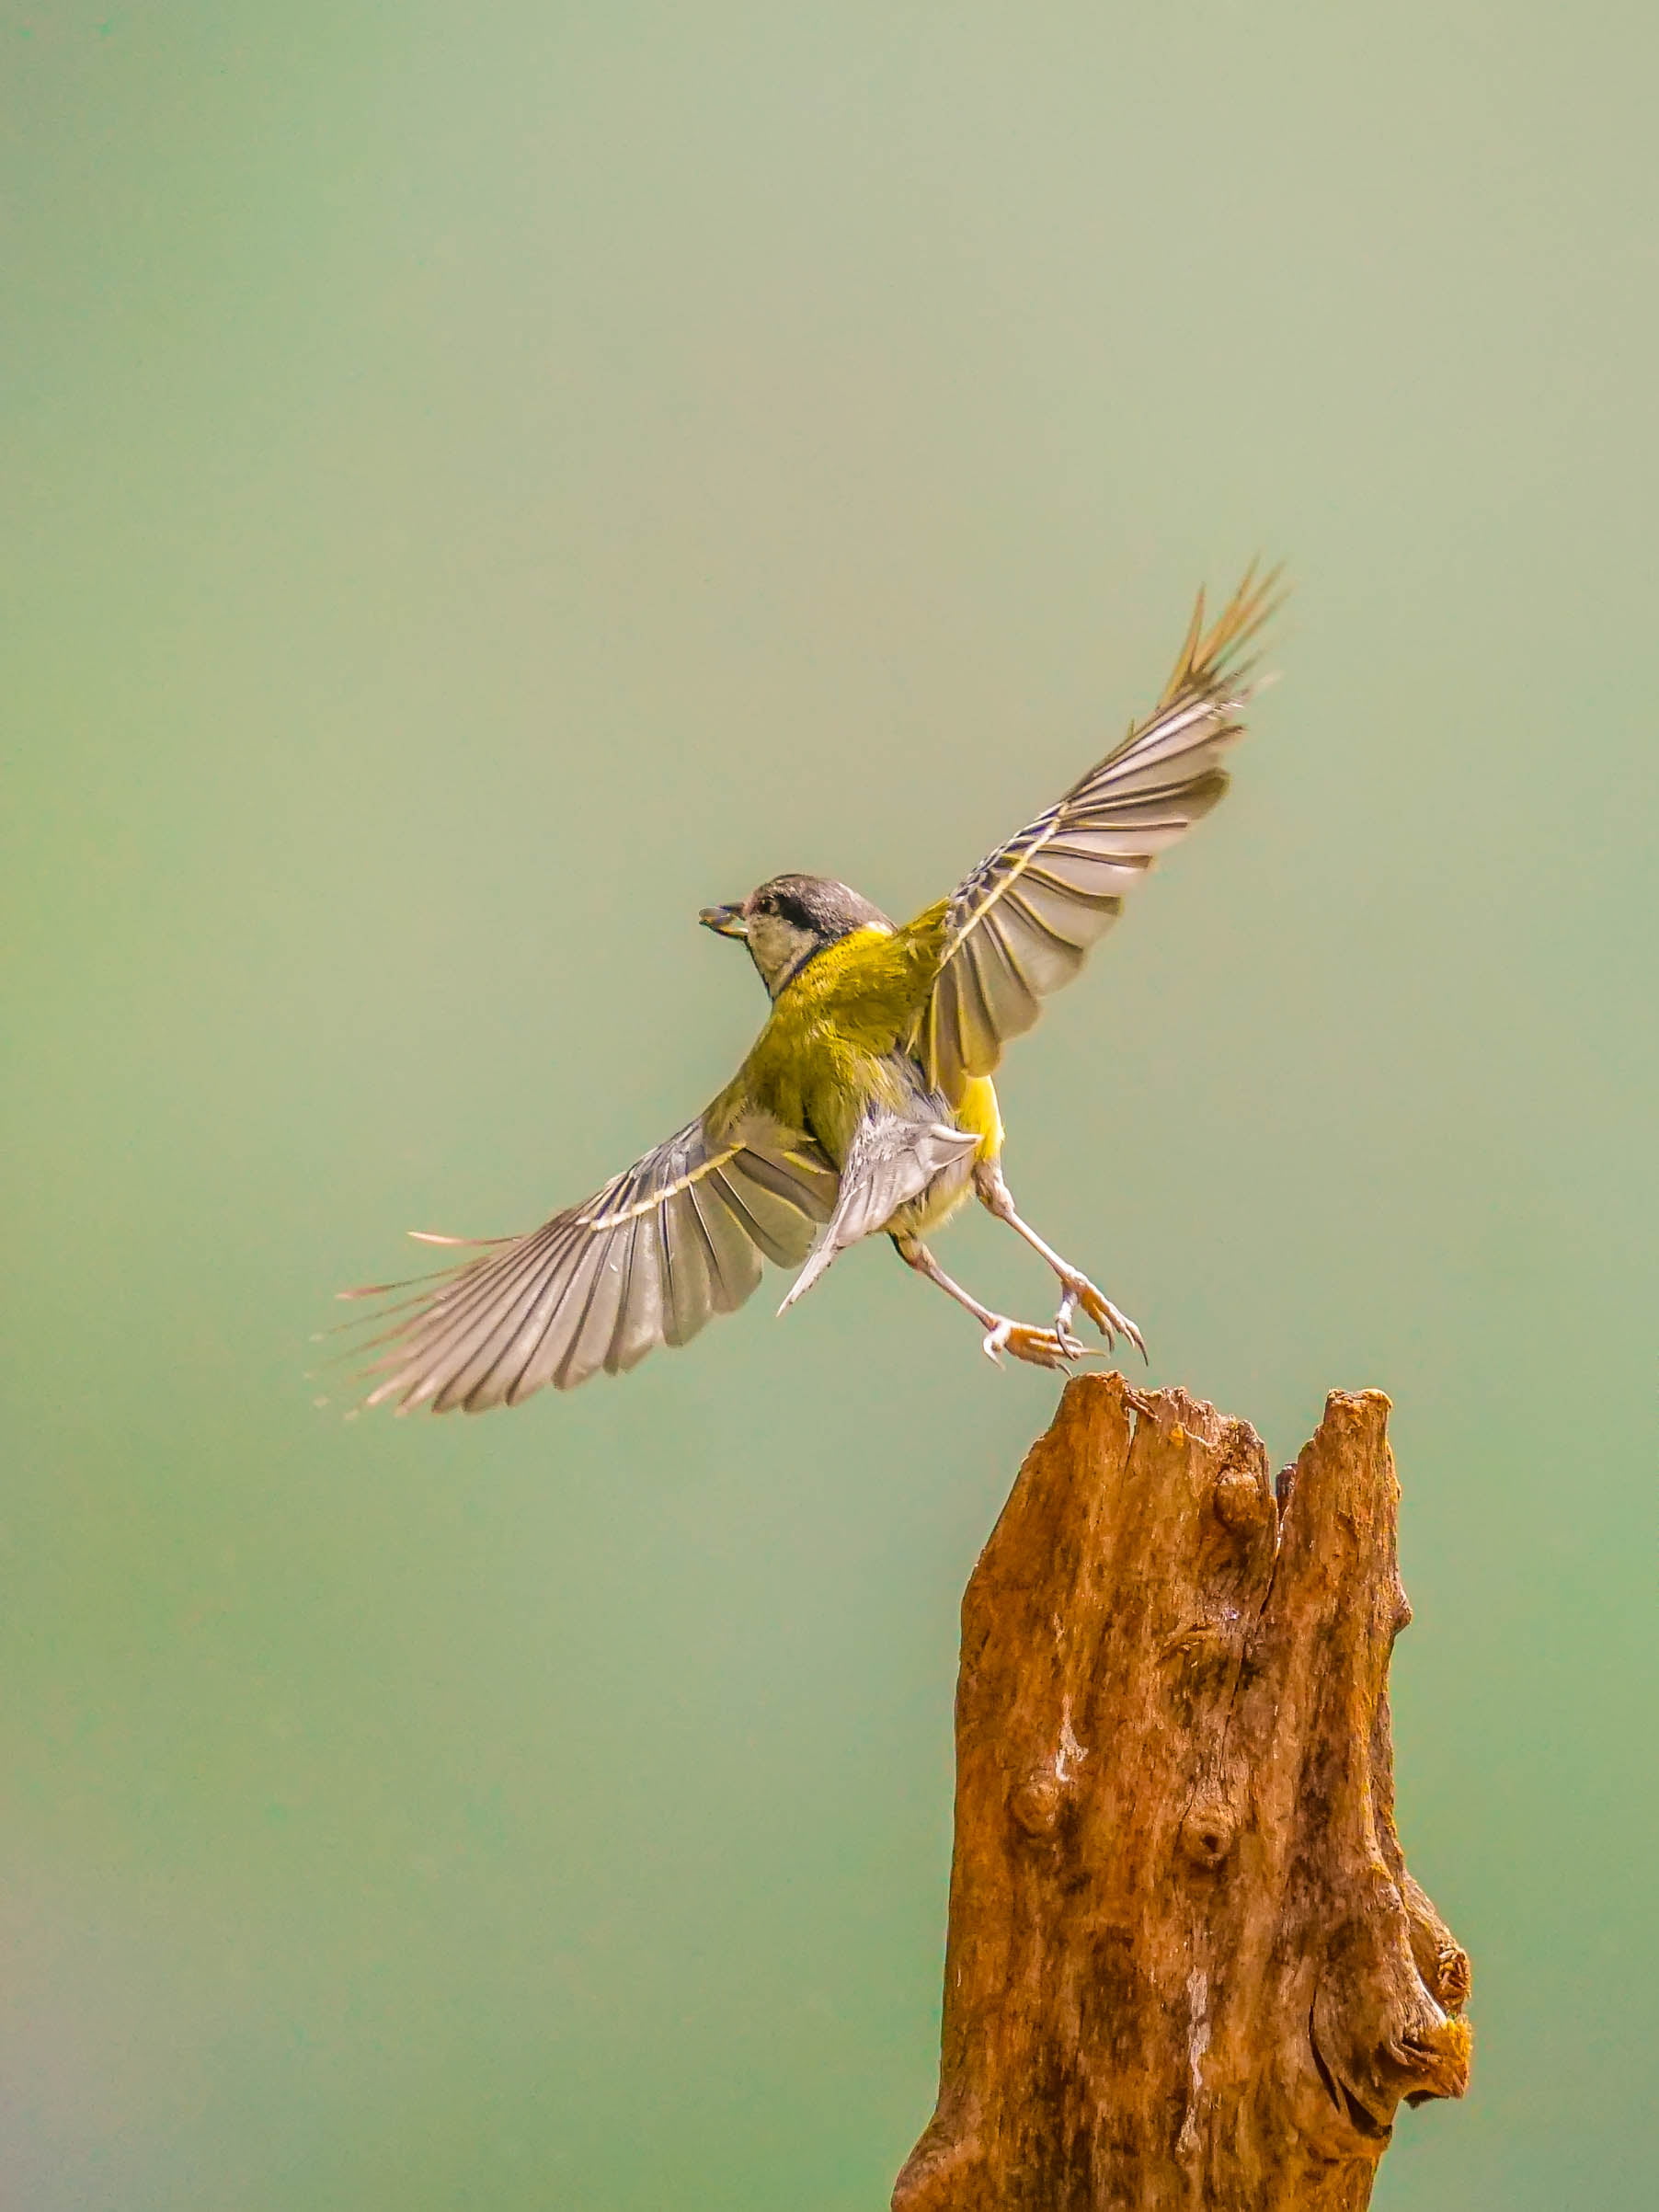 yellow and gray bird, Pirouette, bird  bird, action, shot, animal